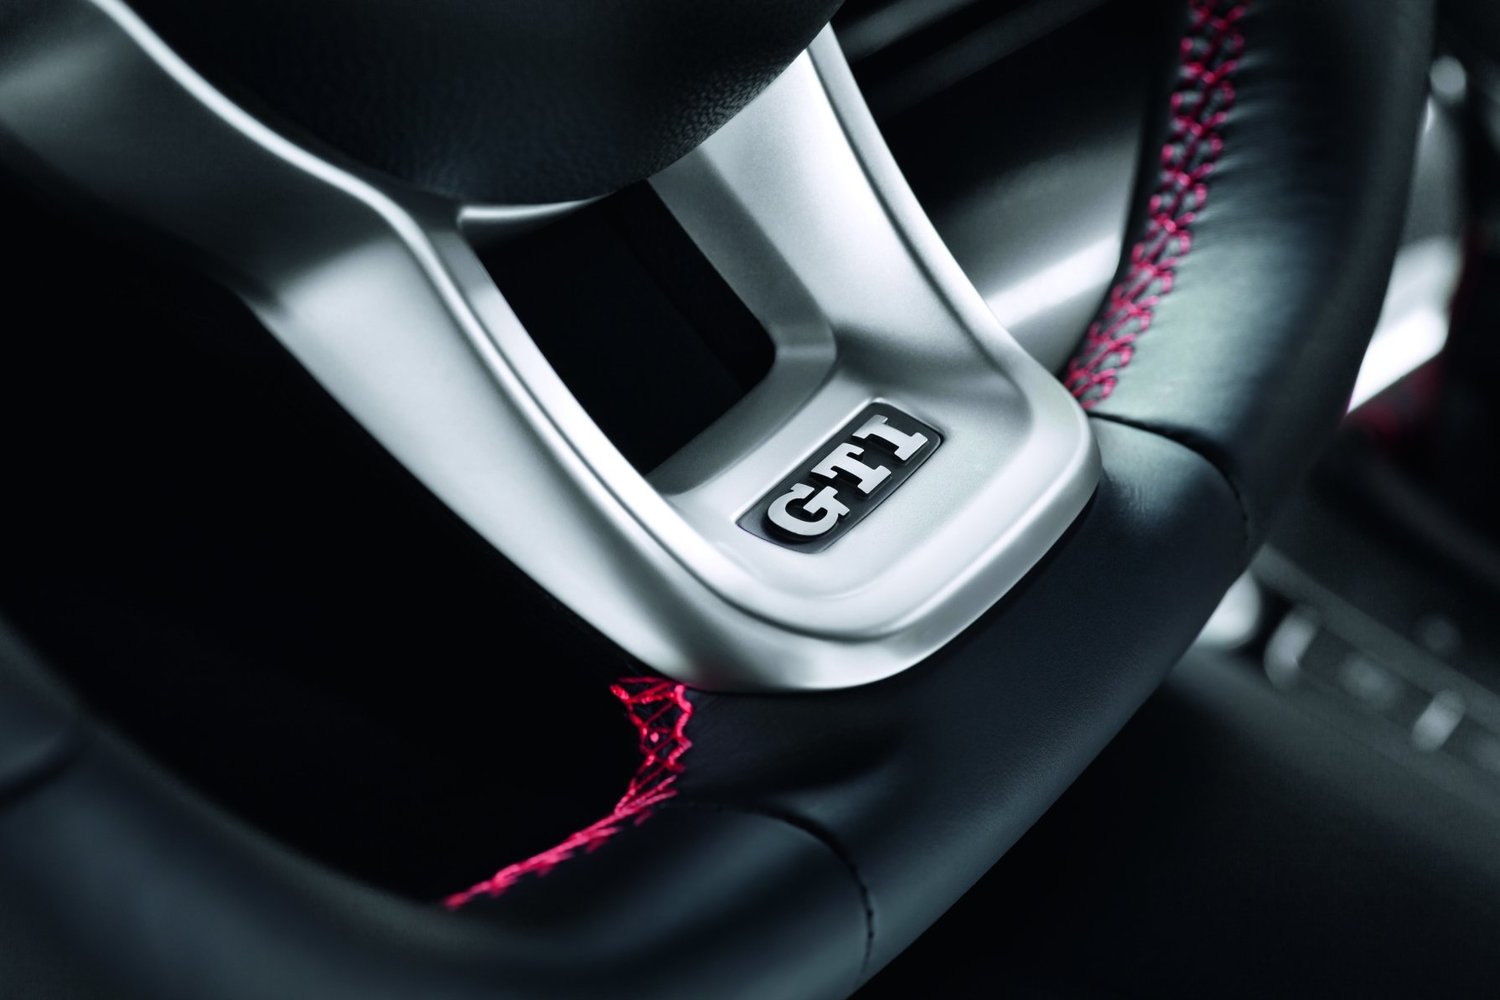 хэтчбек 5 дв. Volkswagen Golf GTI 2013 - 2016г выпуска модификация 2.0 AMT (230 л.с.)